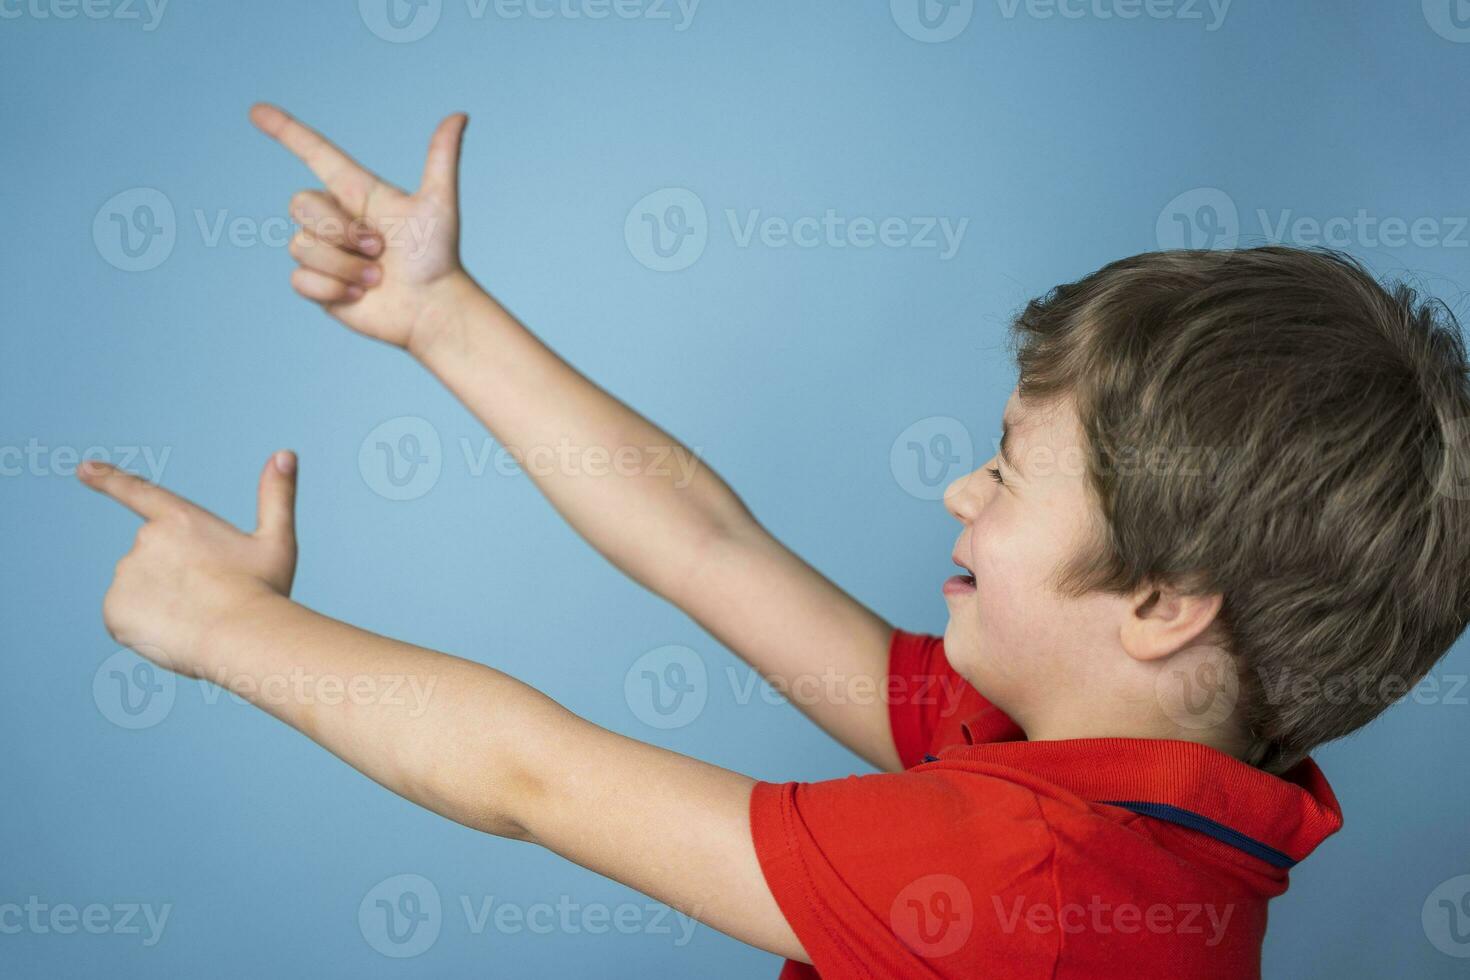 jongen vrolijk schiet zijn vingers gevouwen in de vorm van een pistool. de jongen zetten zijn vingers in de vorm van een geweer foto